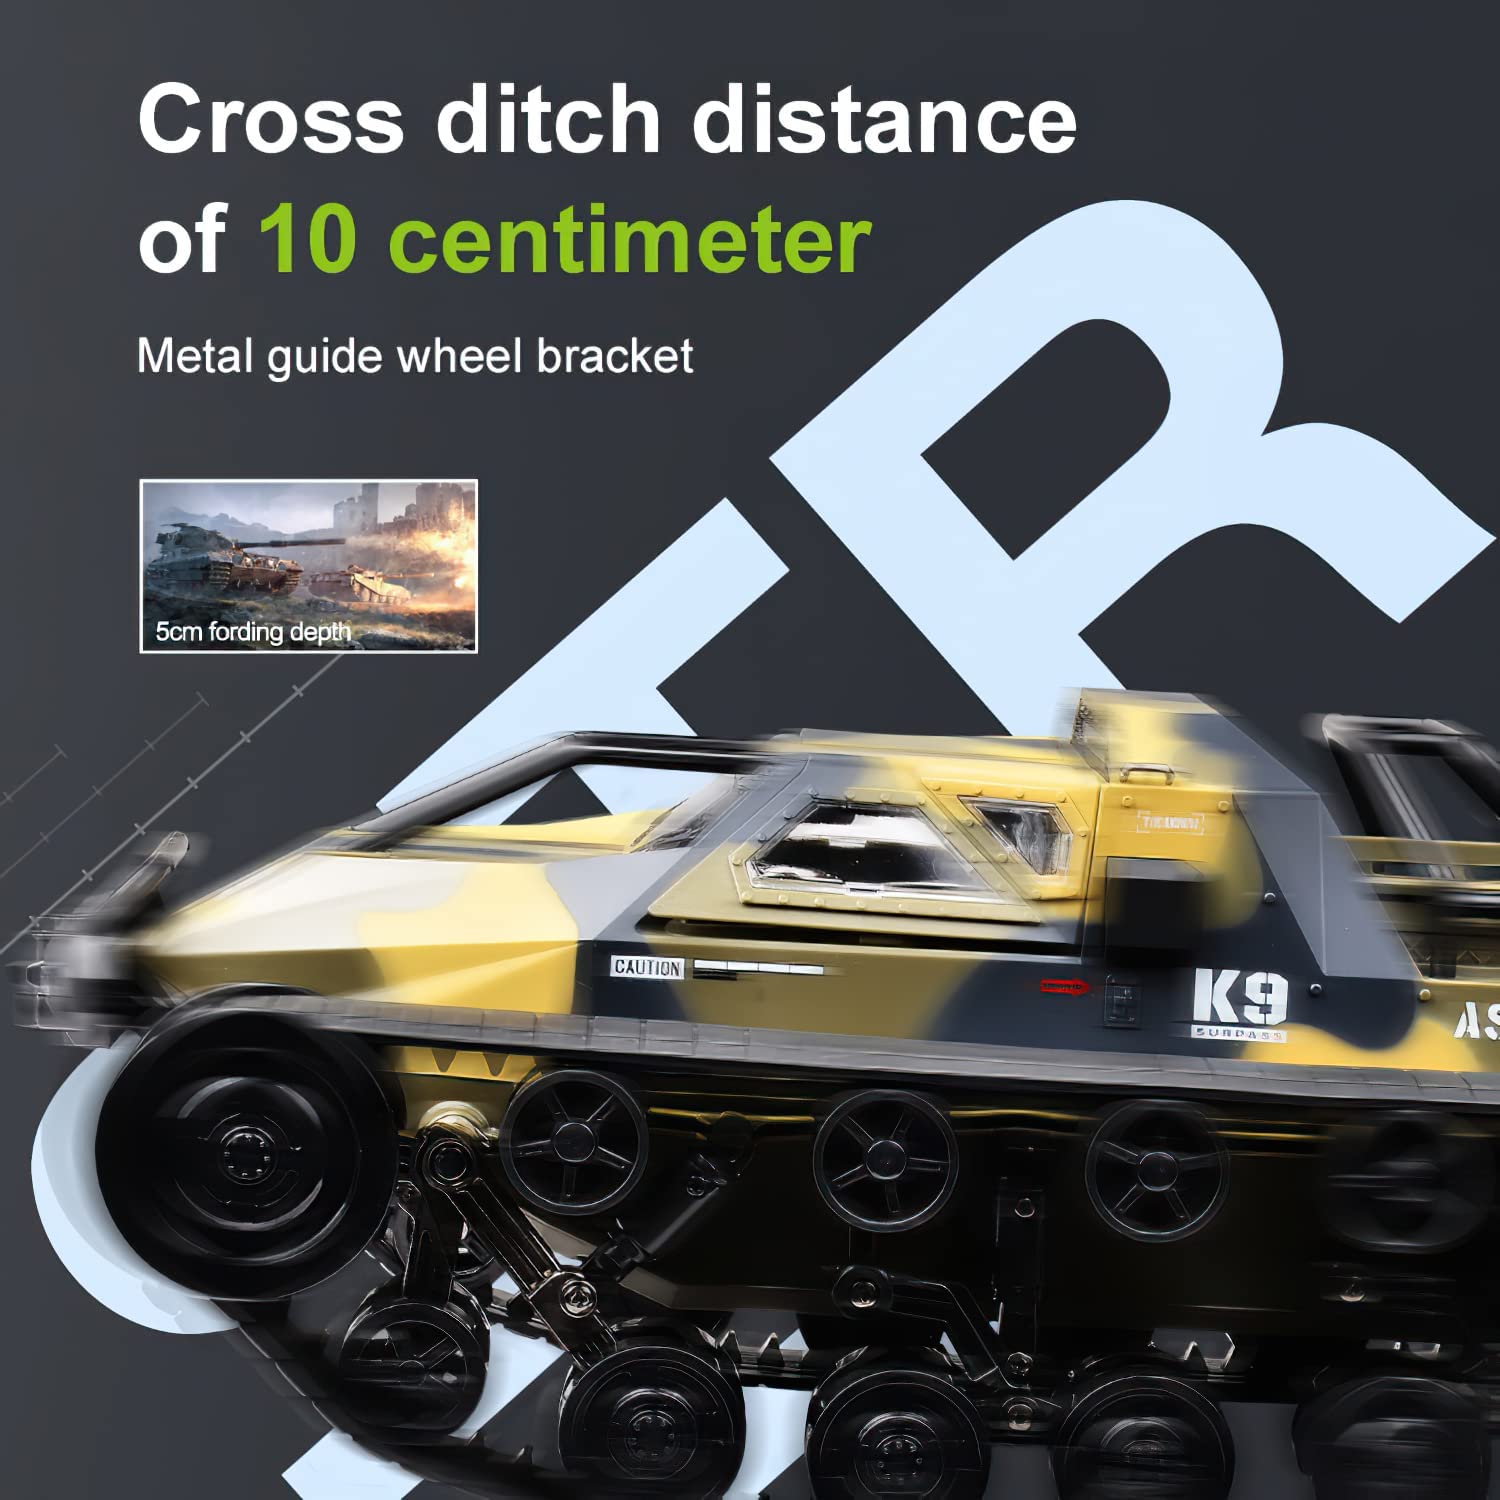 RC-Panzer im Maßstab 1:12 Hochgeschwindigkeits-Fernsteuerungs-All-Terrain-Panzer